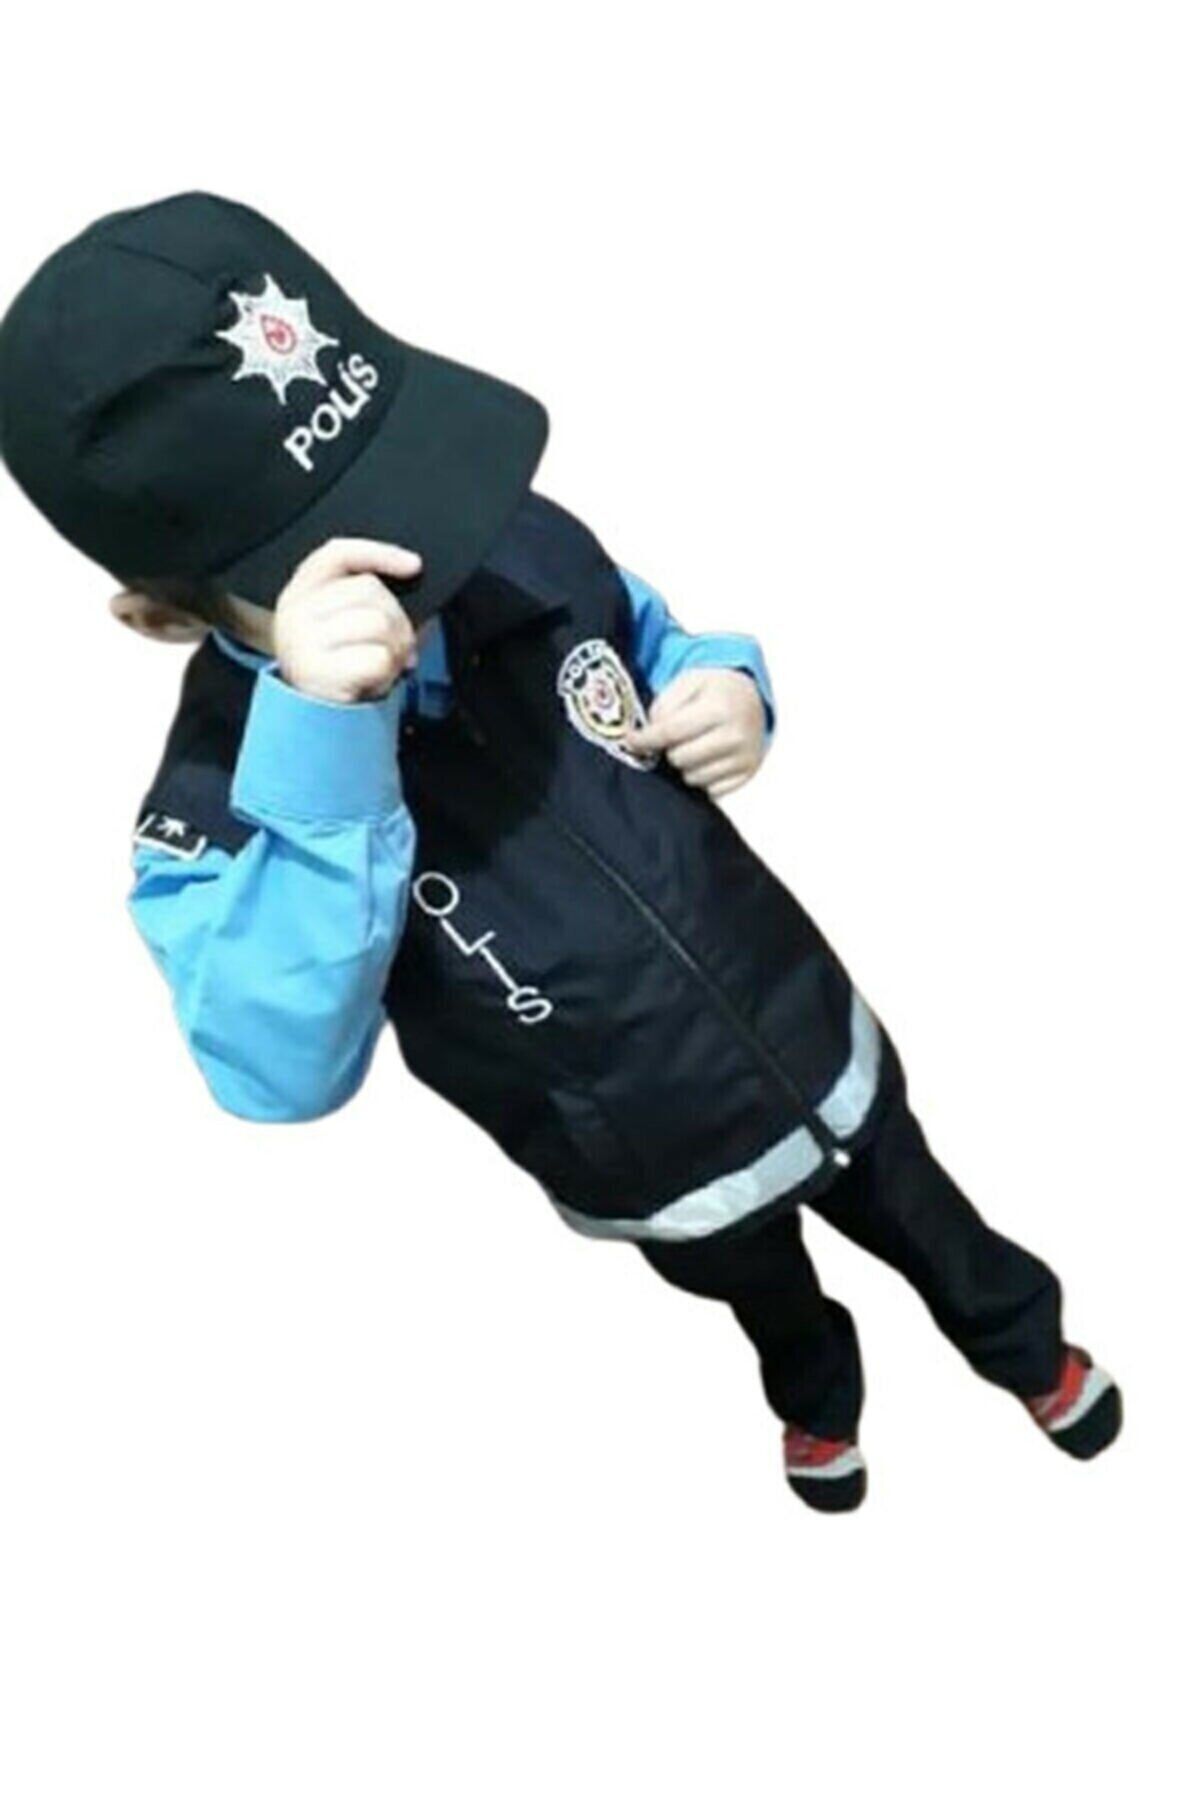 Muraty Çocuk Yelekli Polis Kıyafeti Kostümü